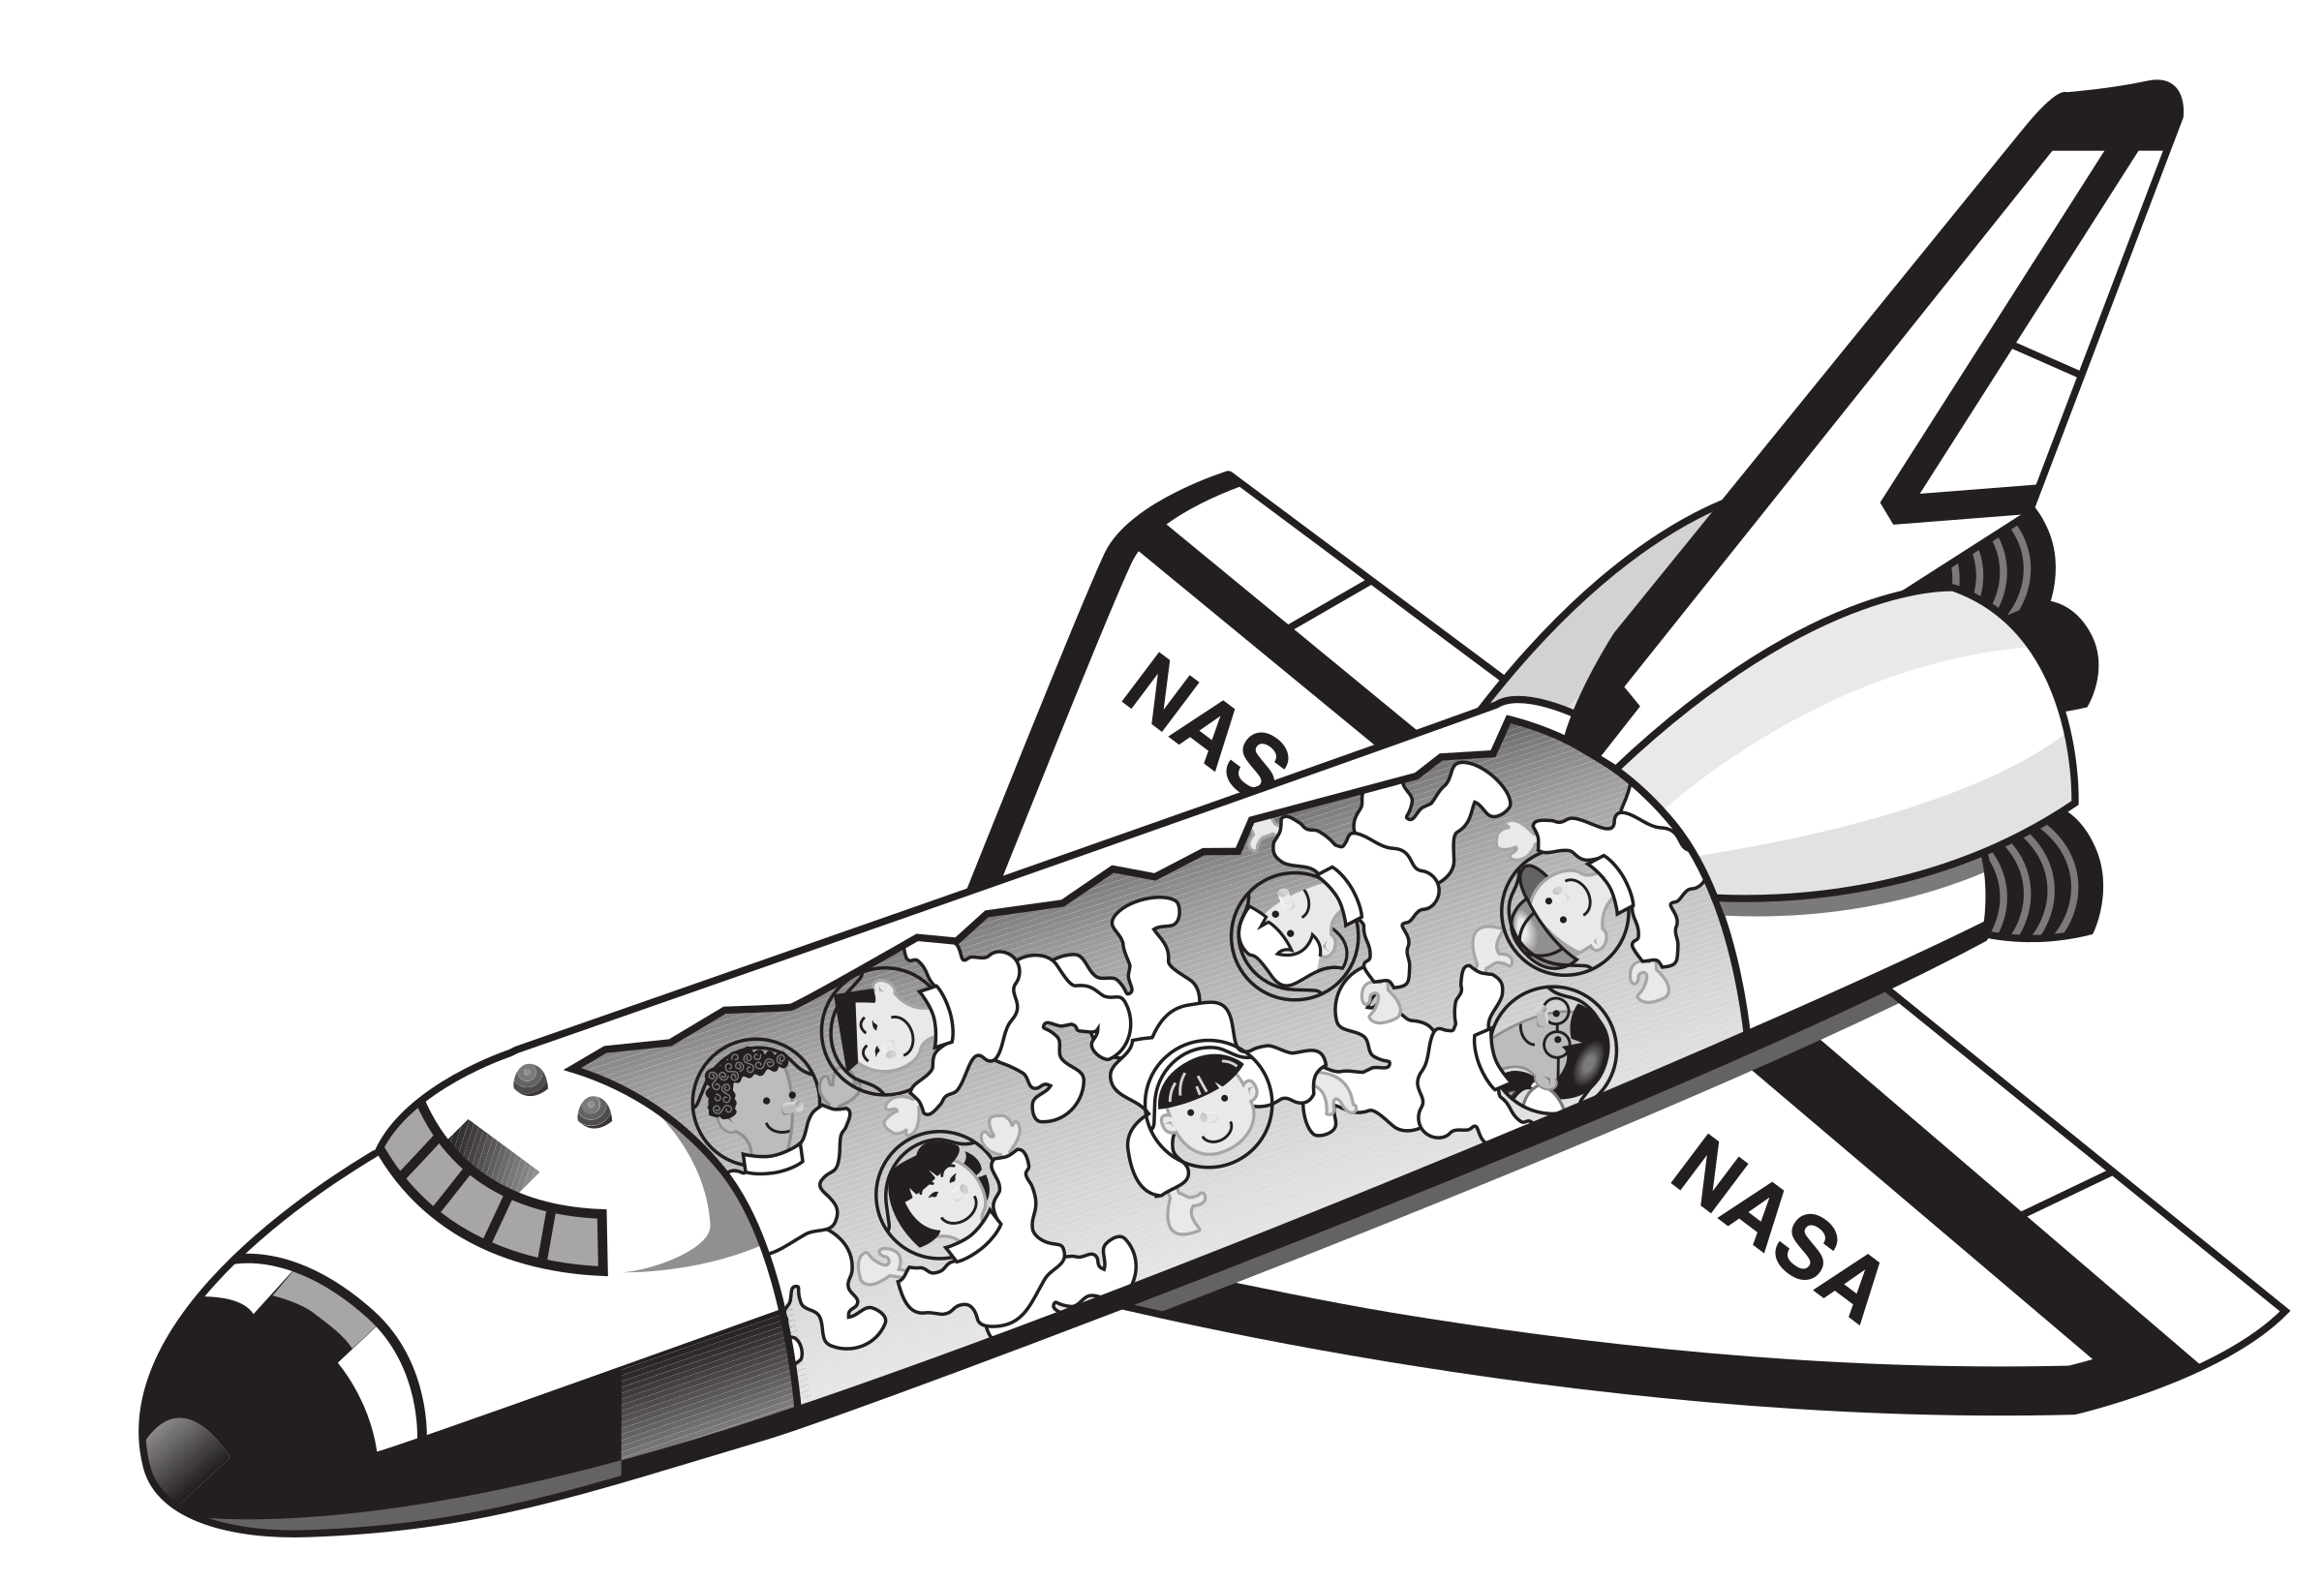 Space shuttle spaceship.